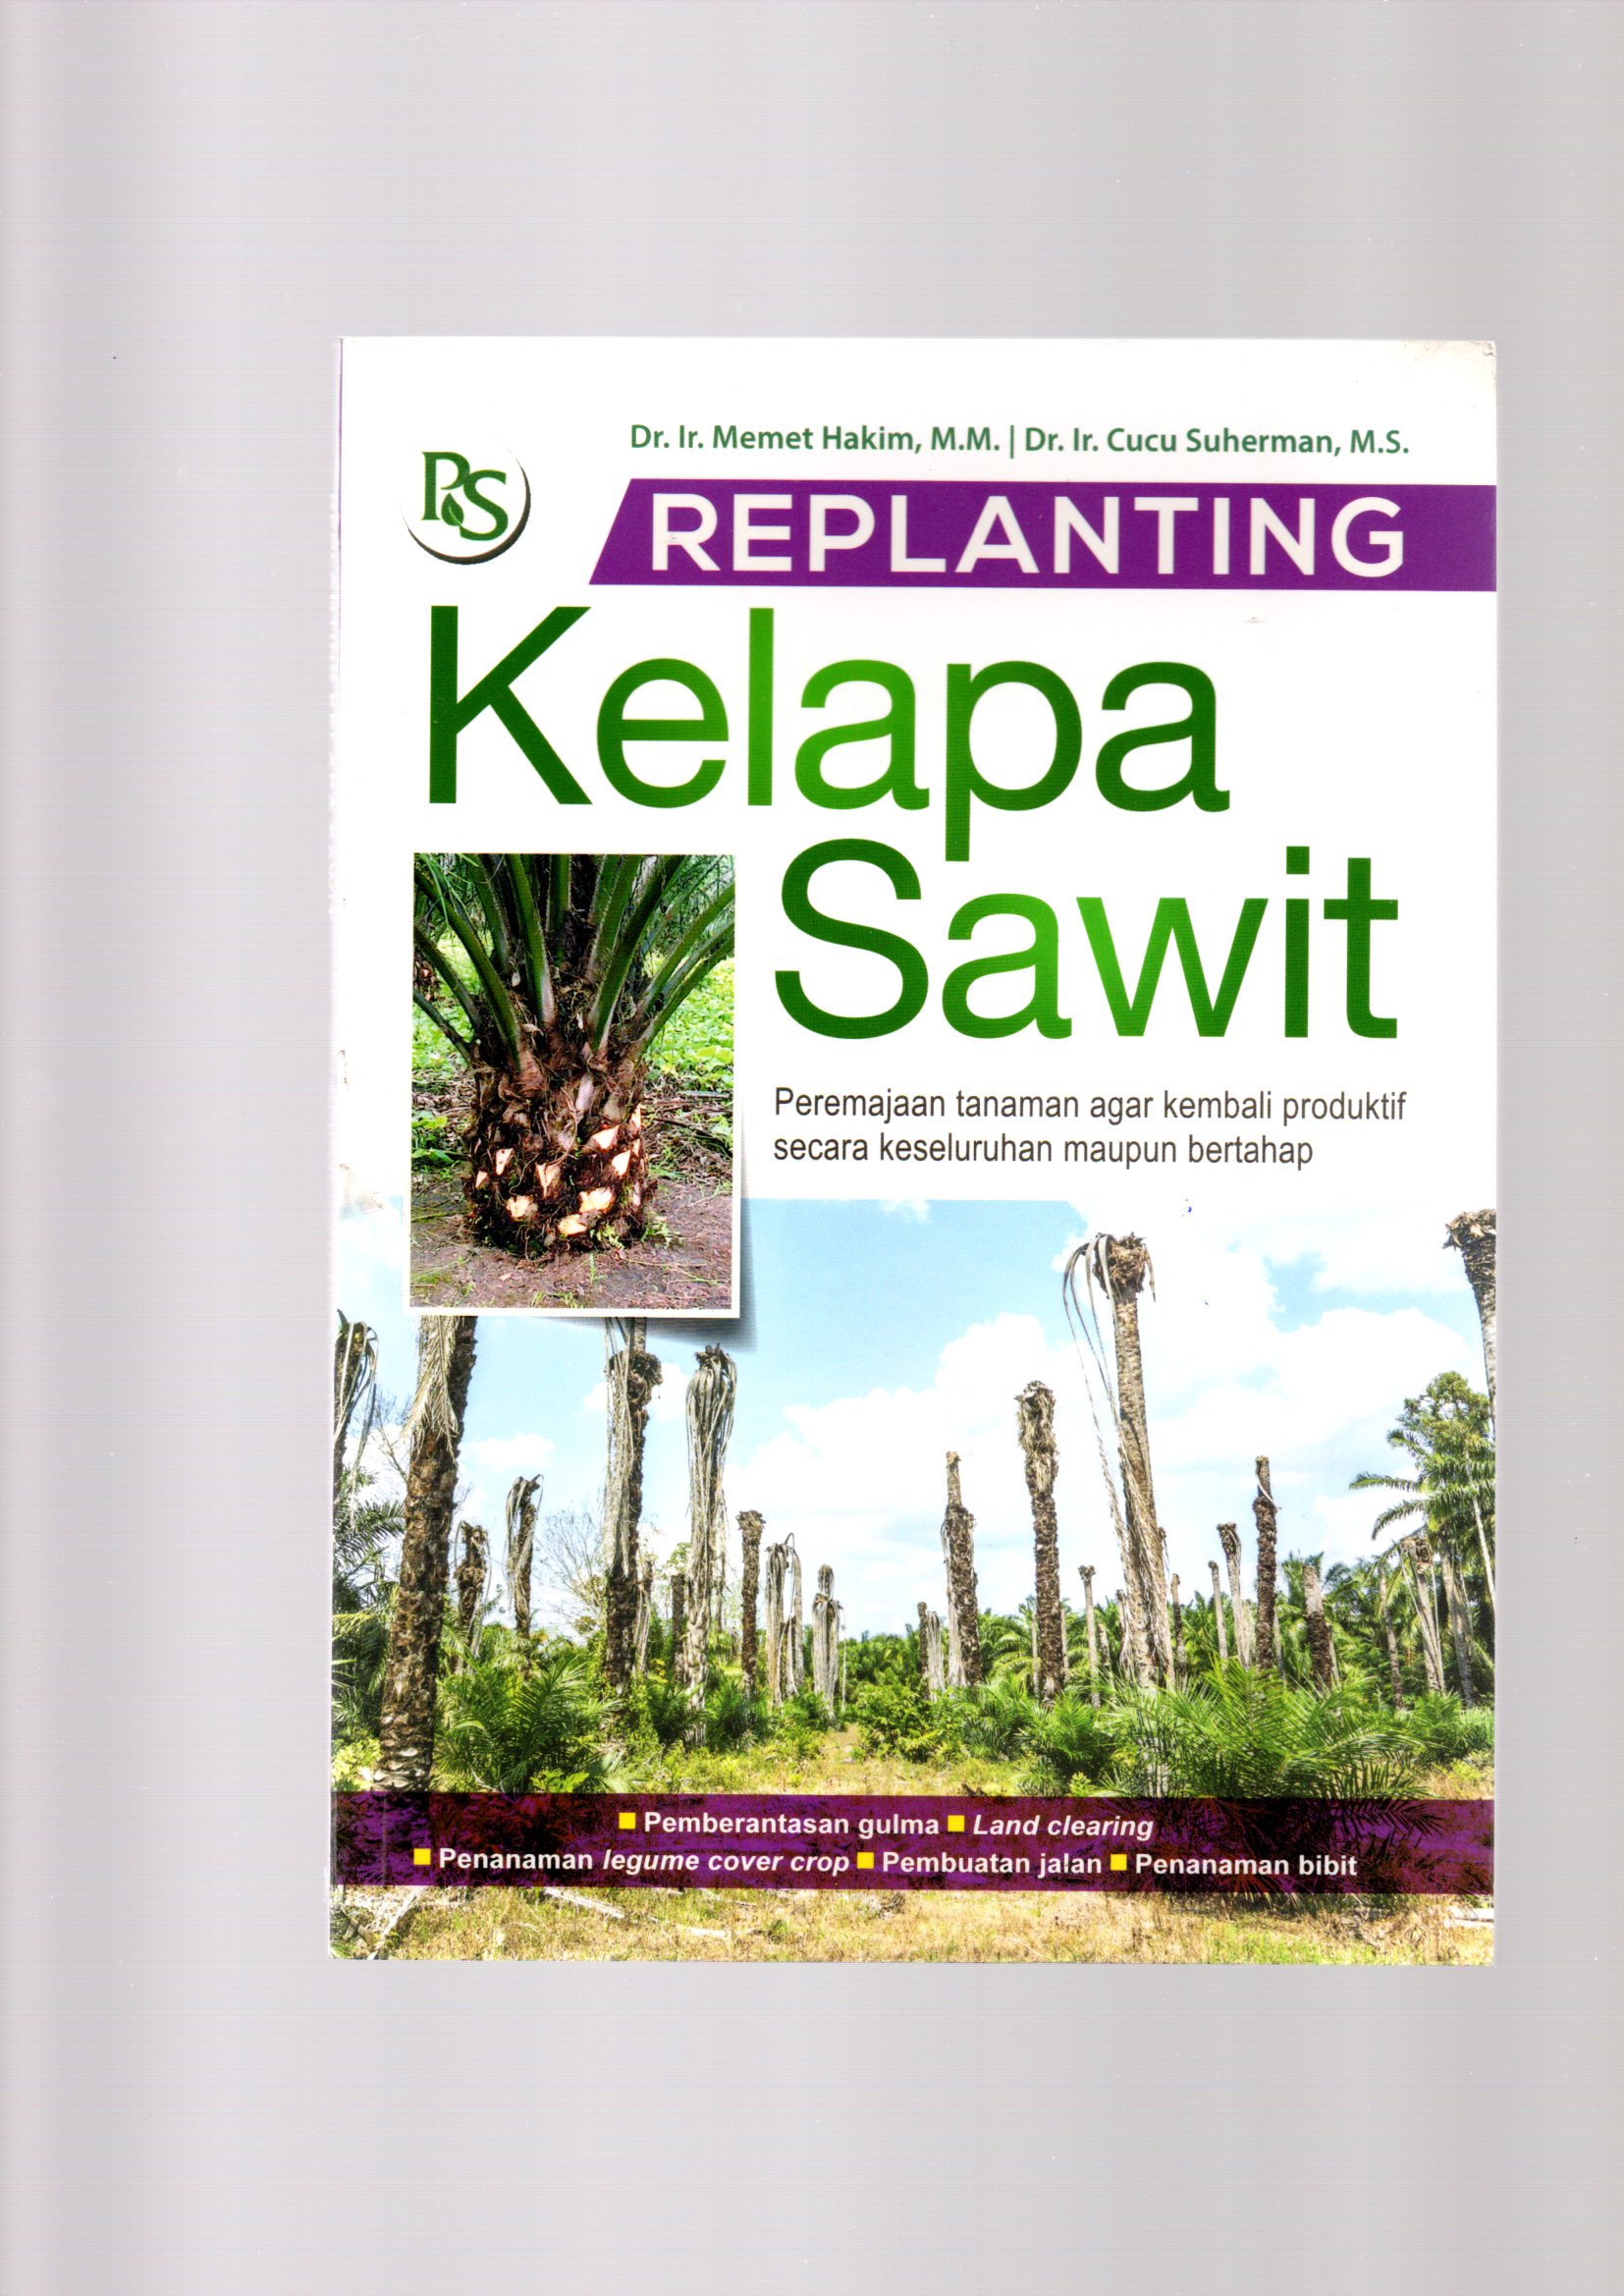 Replanting kelapa sawit